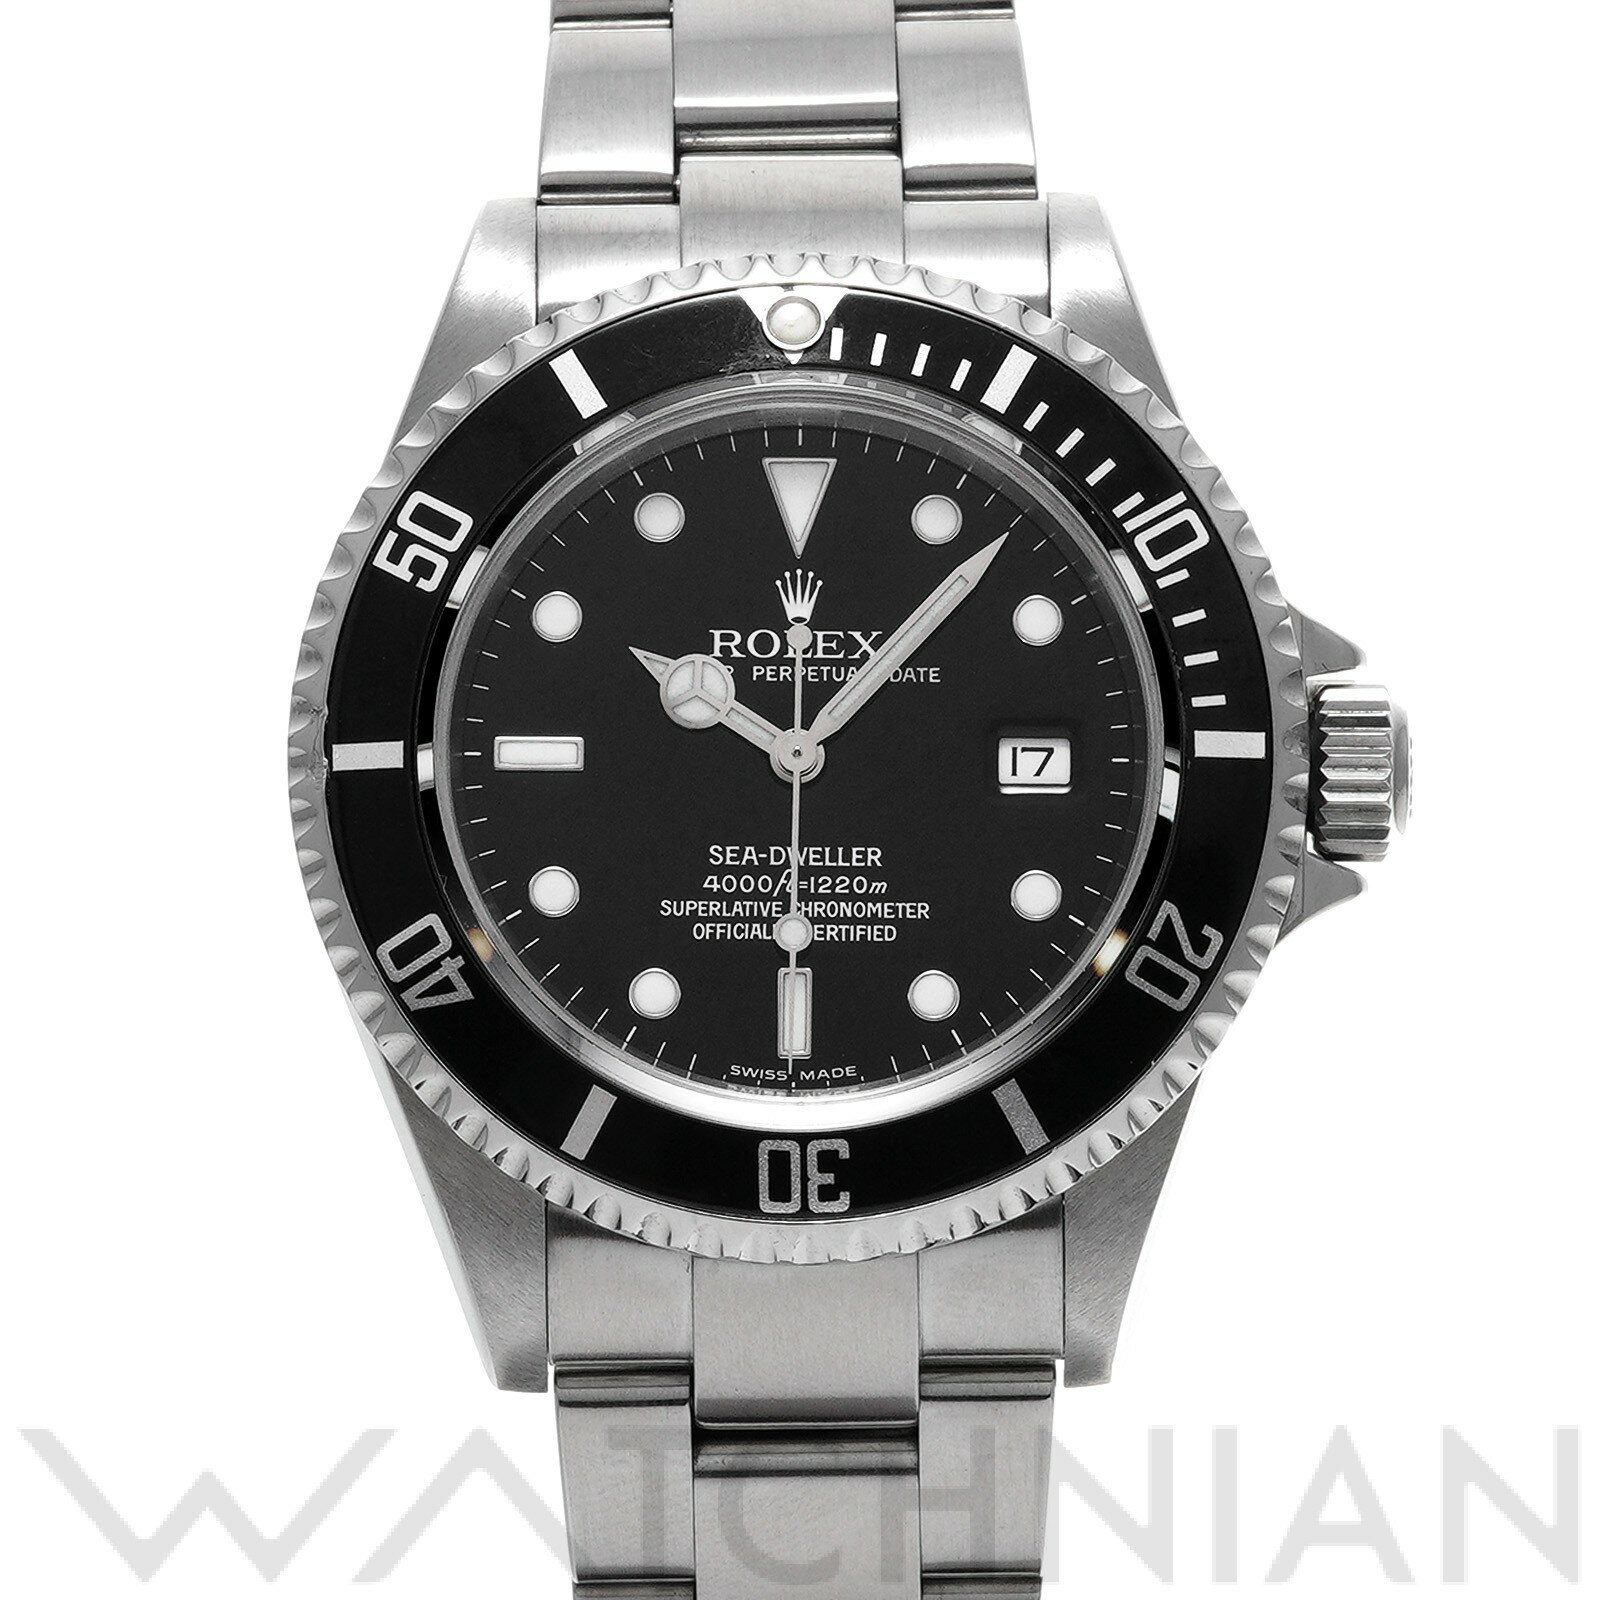 【ローン48回払い無金利】【中古】 ロレックス ROLEX シードゥエラー 16600 F番(2004年頃製造) ブラック メンズ 腕時計